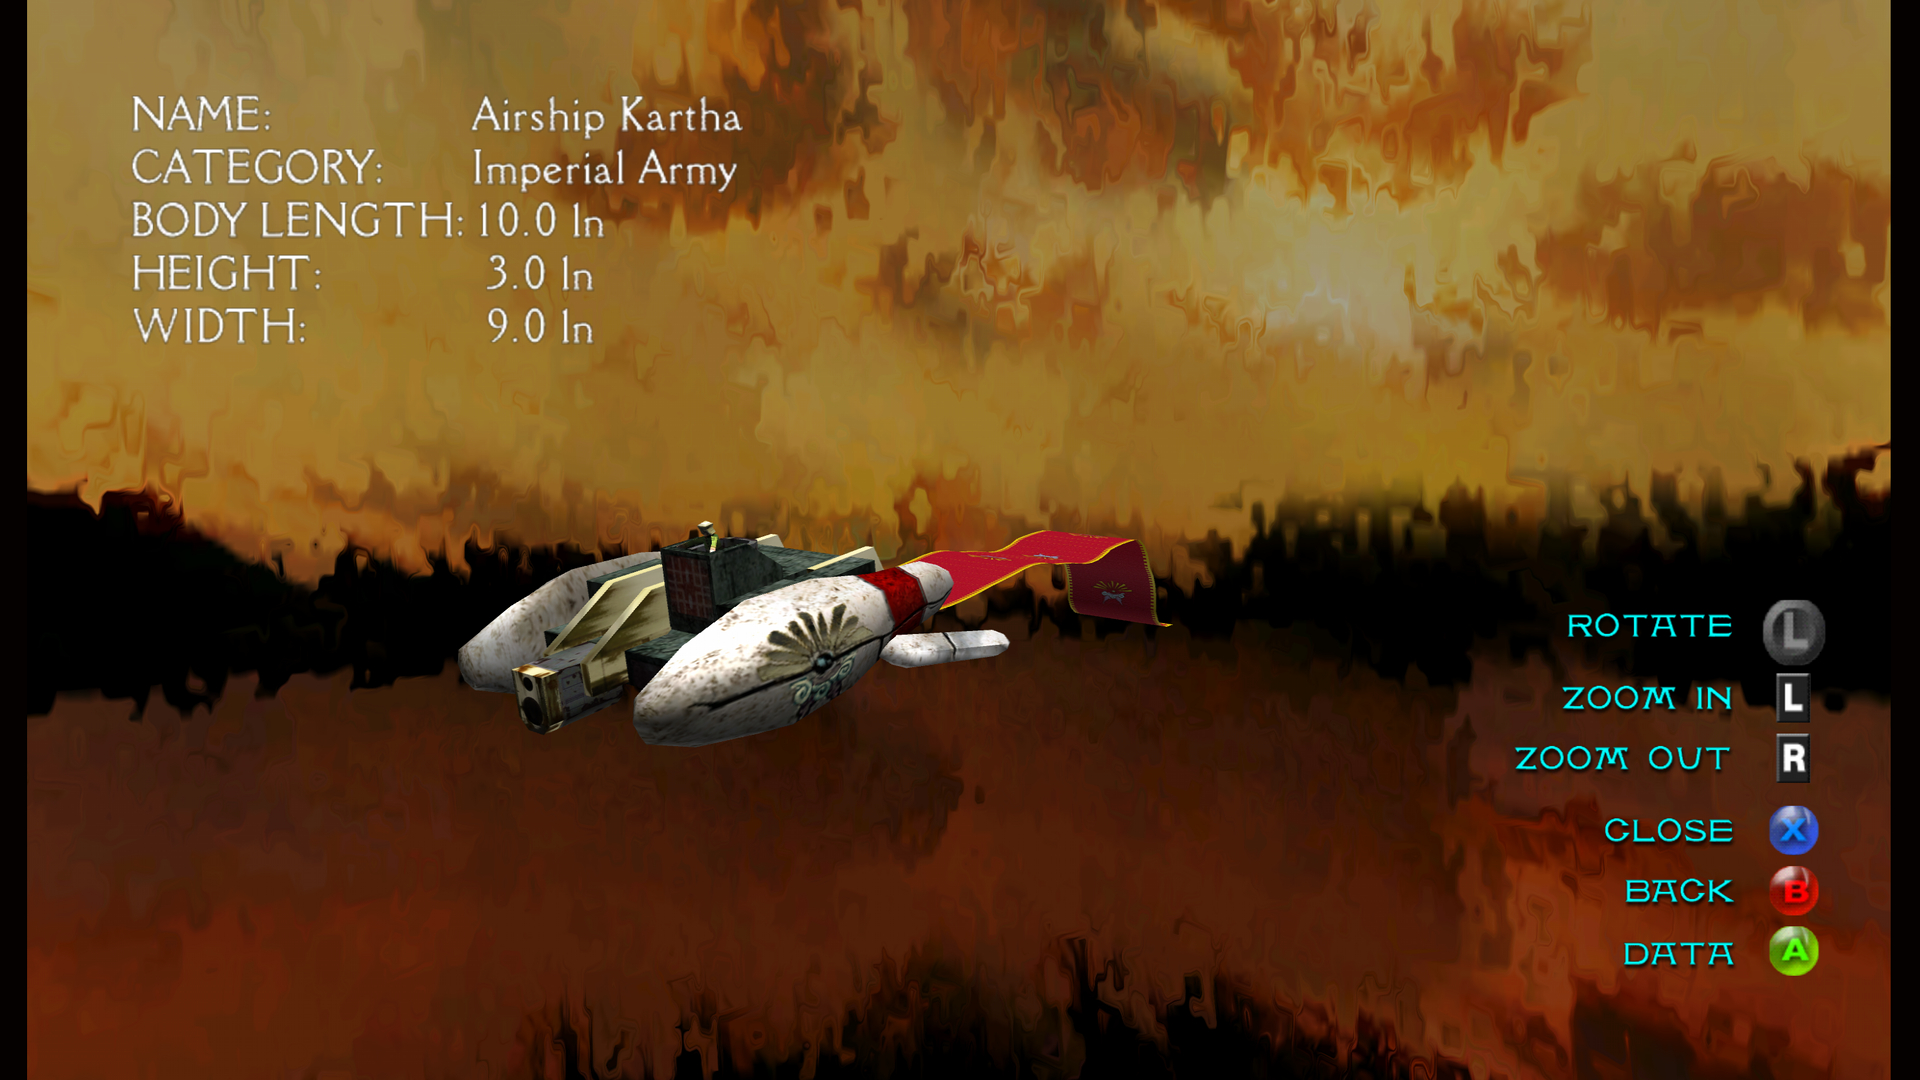 Airship Kartha